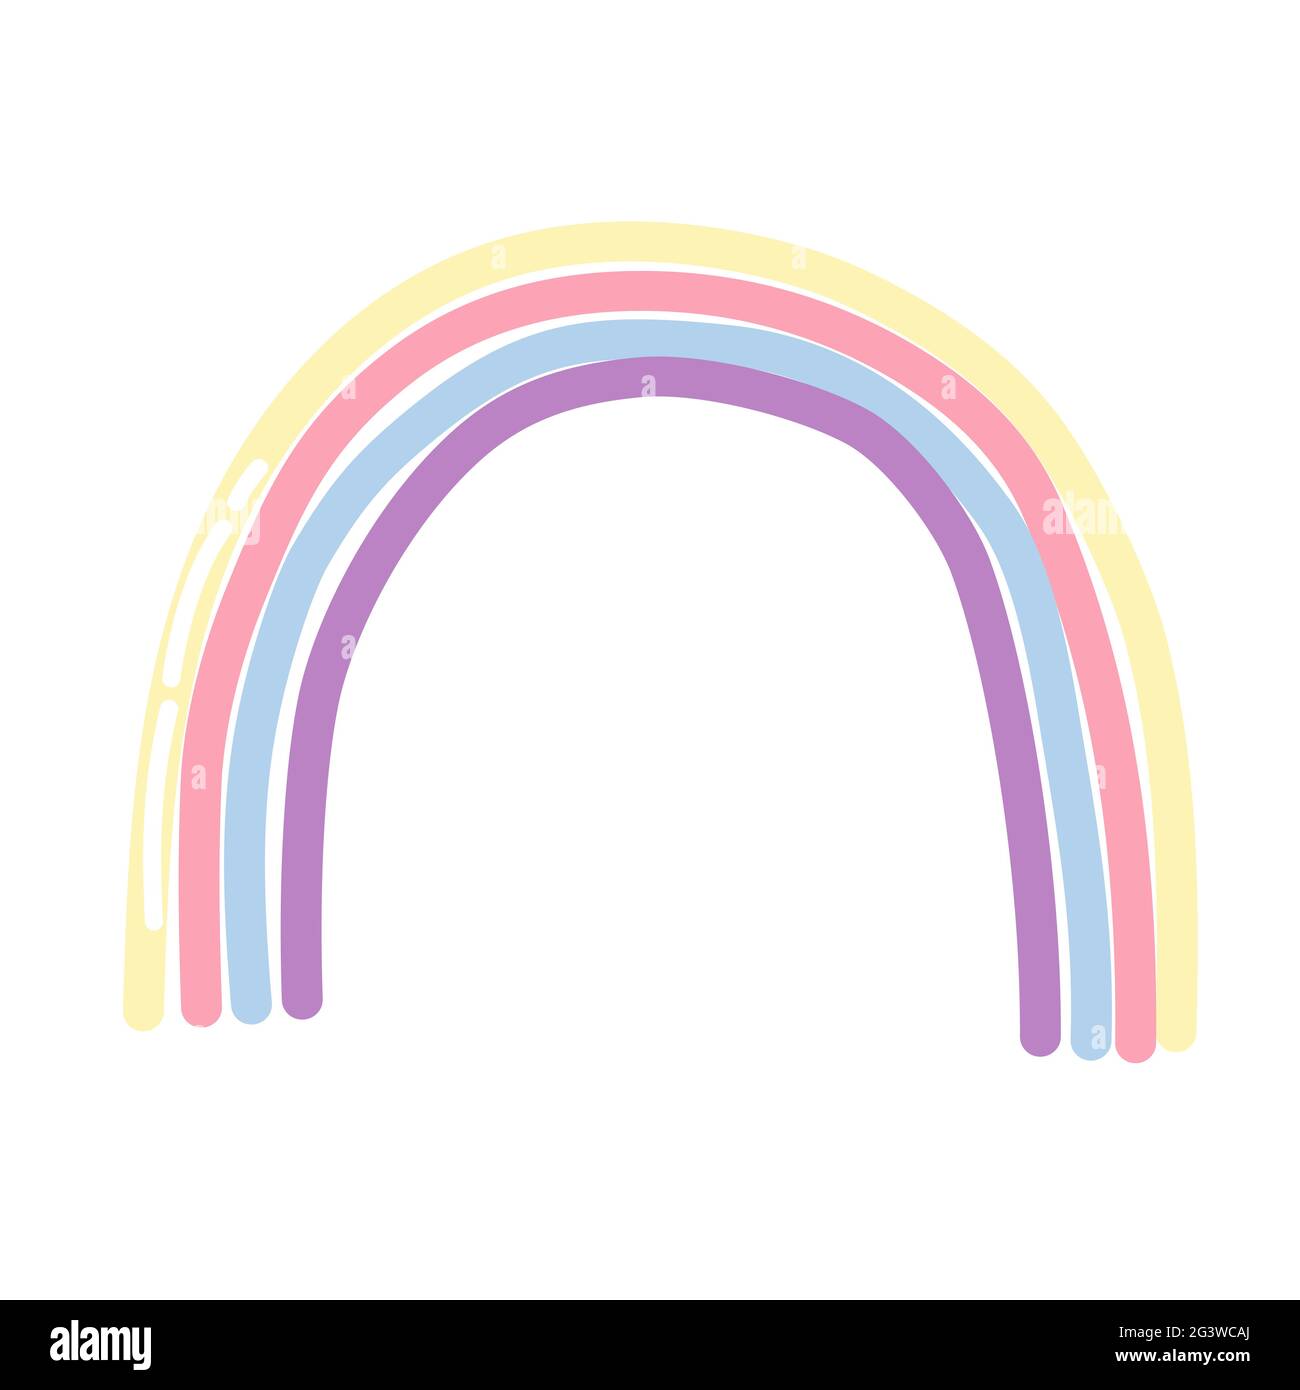 Farbenfroher Regenbogen im flachen Cartoon-Stil auf weißem Hintergrund isoliert. Modernes Doodle-Muster mit Cartoon-Regenbogen. Niedliches Babymotiv. Witziger Vektor Stock Vektor